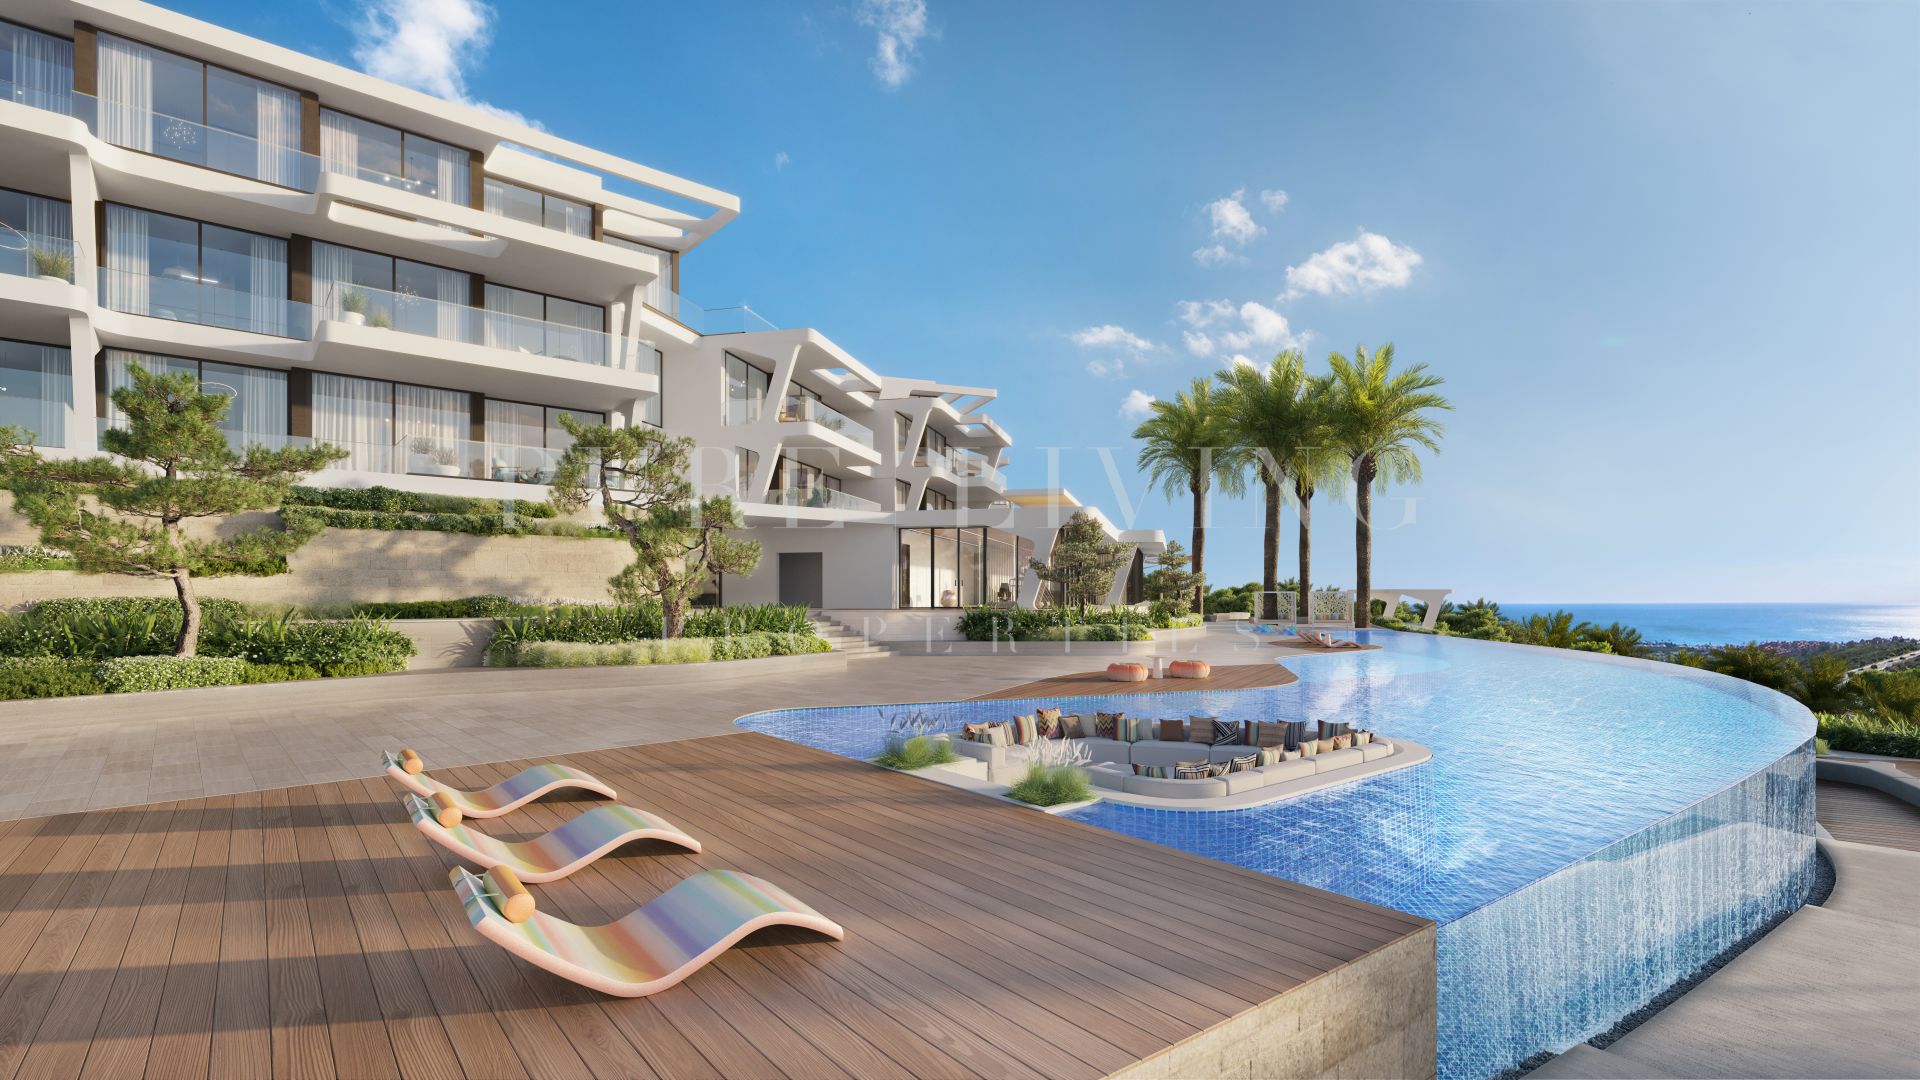 Marea, een nieuw project in de prachtige omgeving van het Finca Cortesin Resort